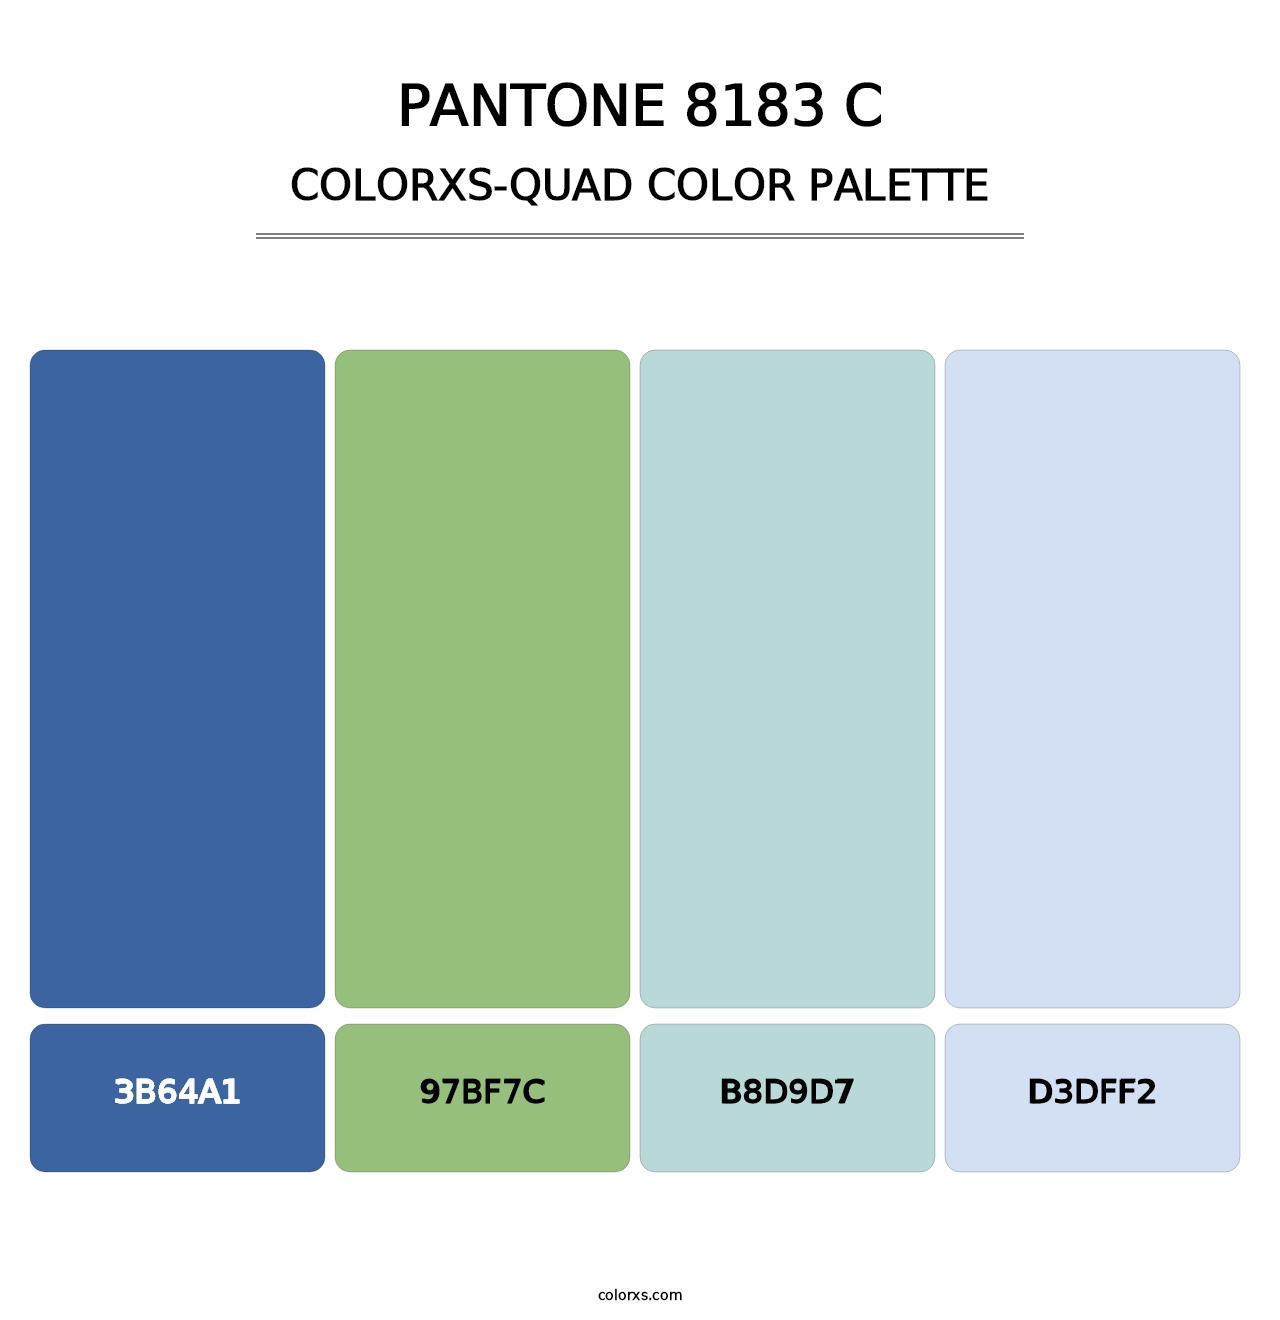 PANTONE 8183 C - Colorxs Quad Palette